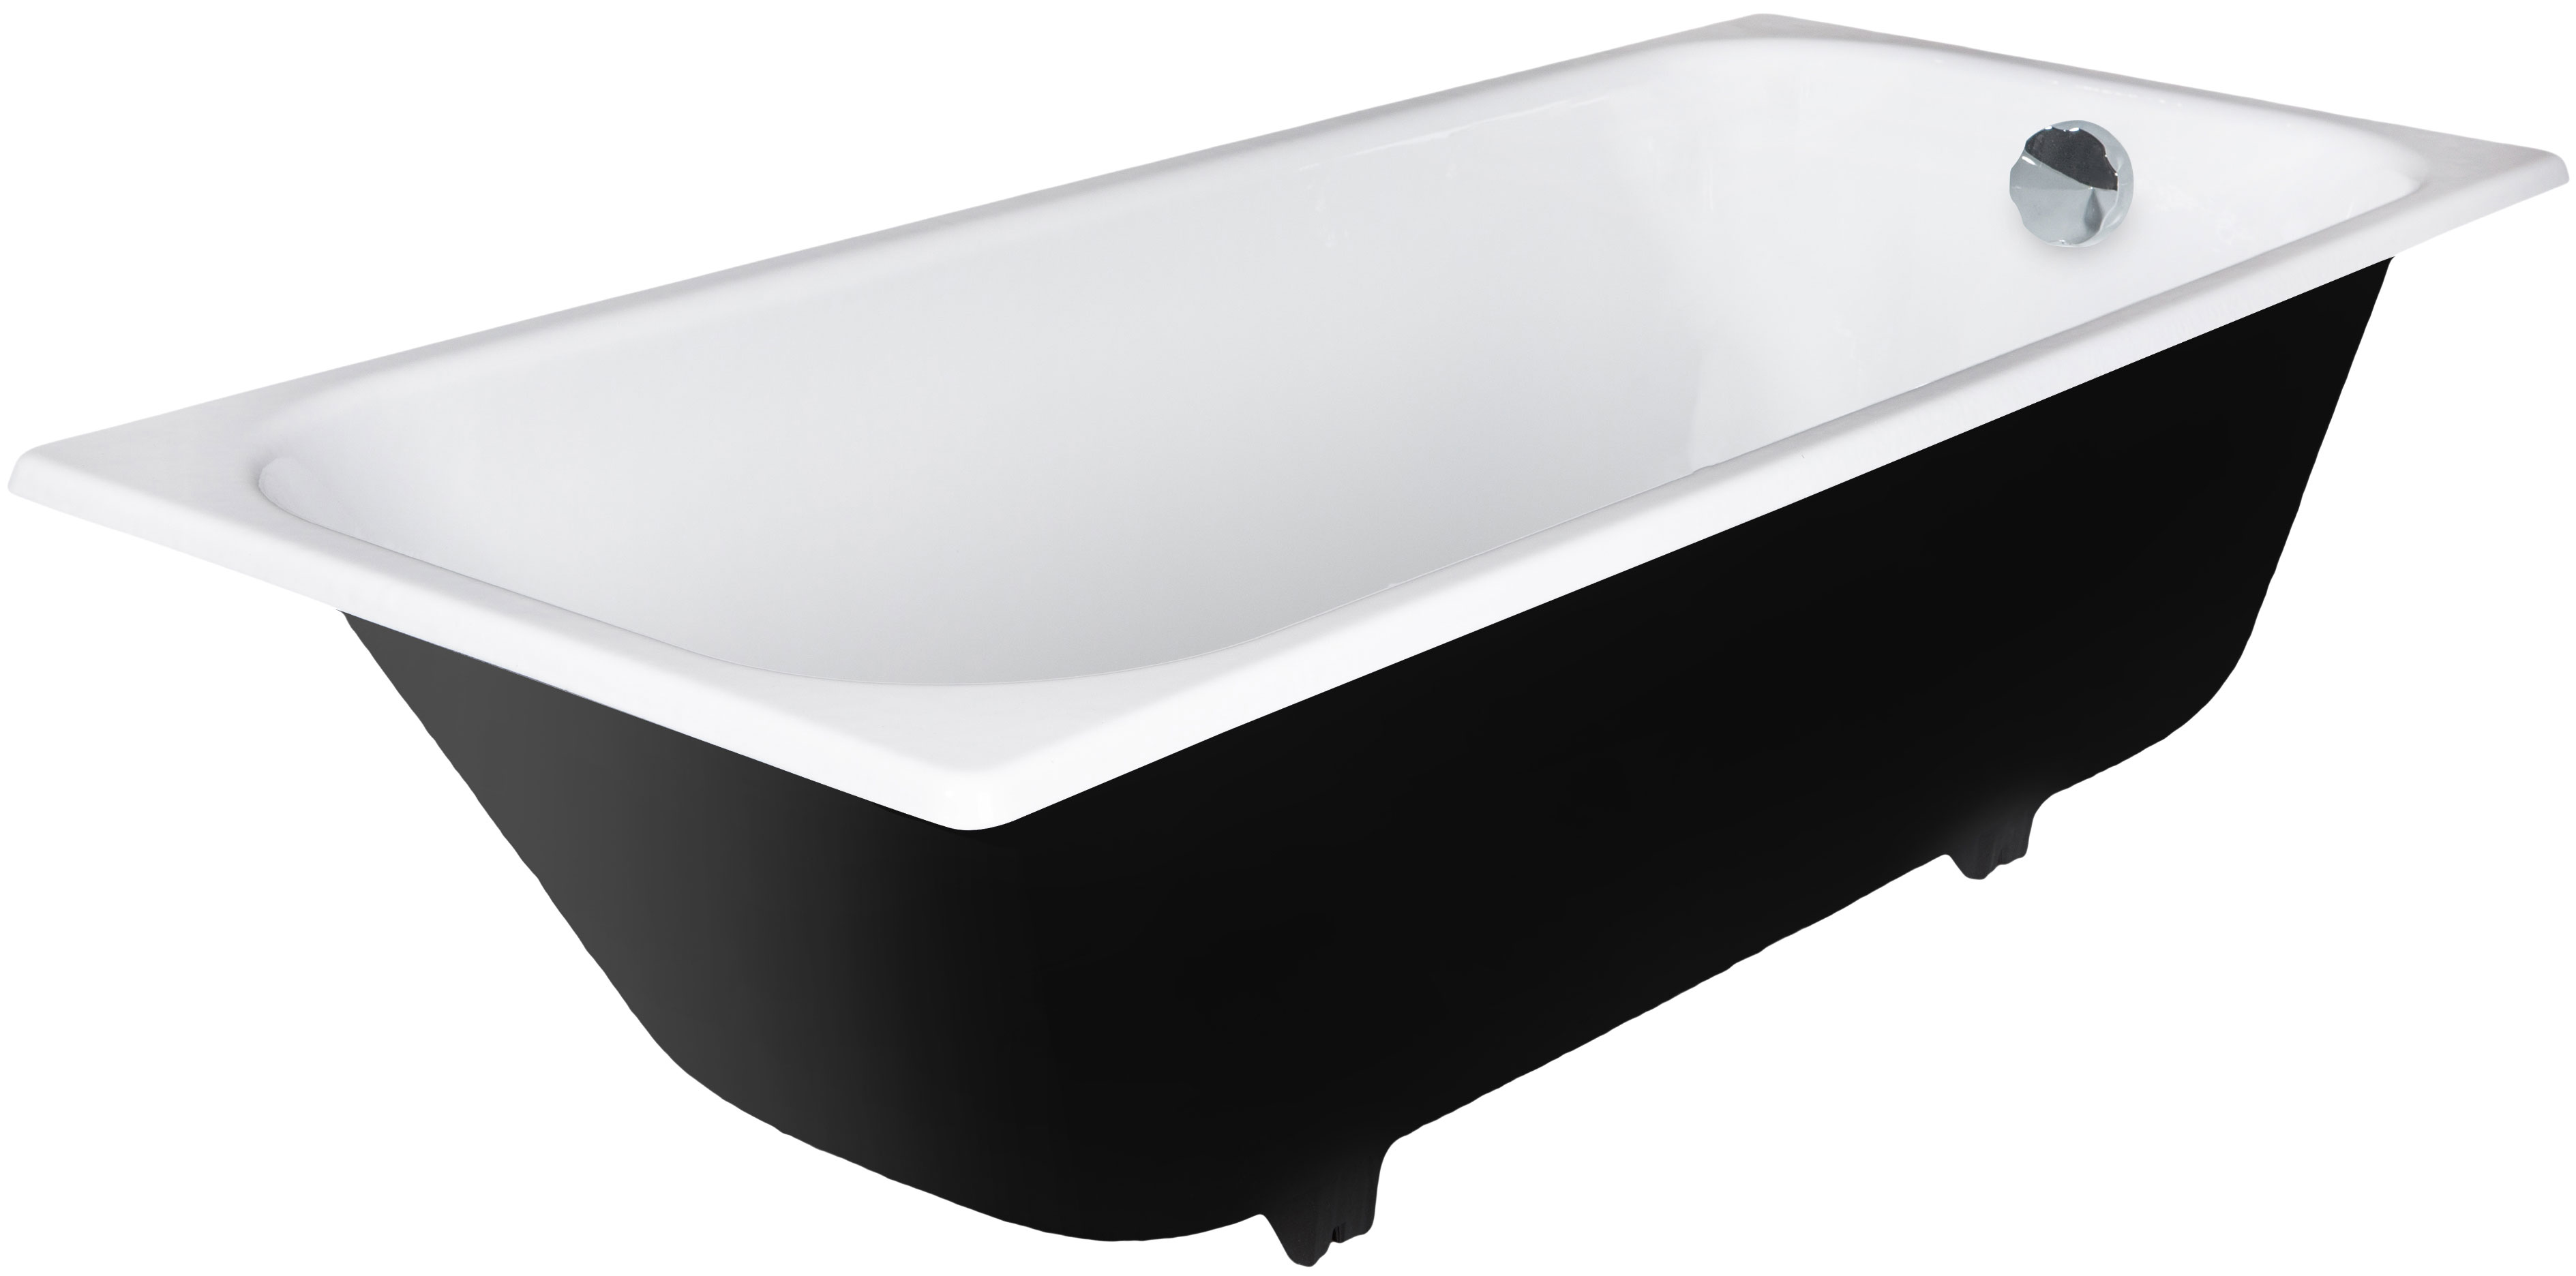 Чугунная ванна Wotte Start 170x70, с отверстиями для ручек